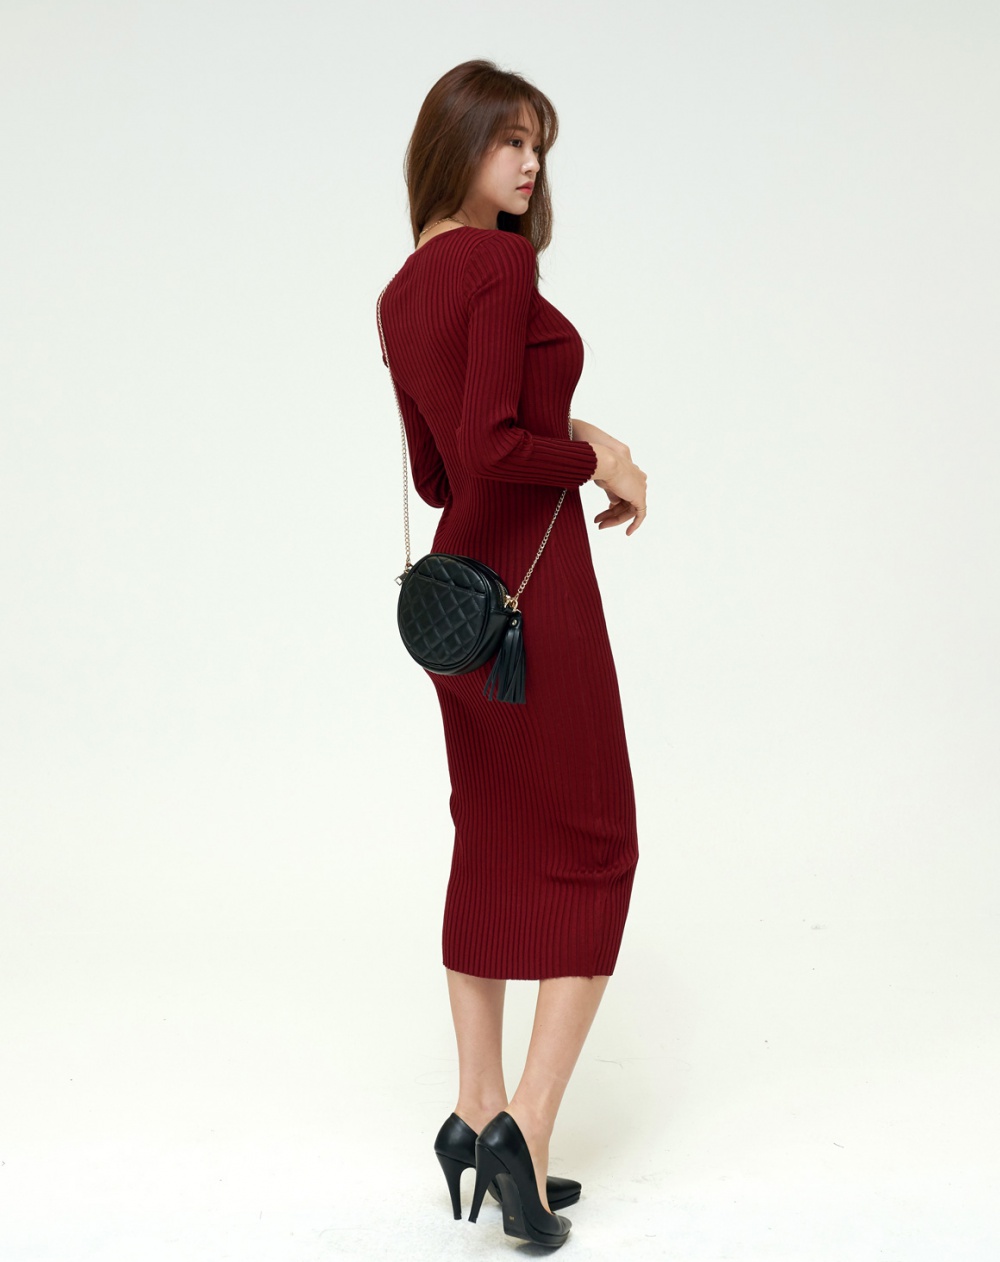 Long V-neck overcoat knitted dress for women